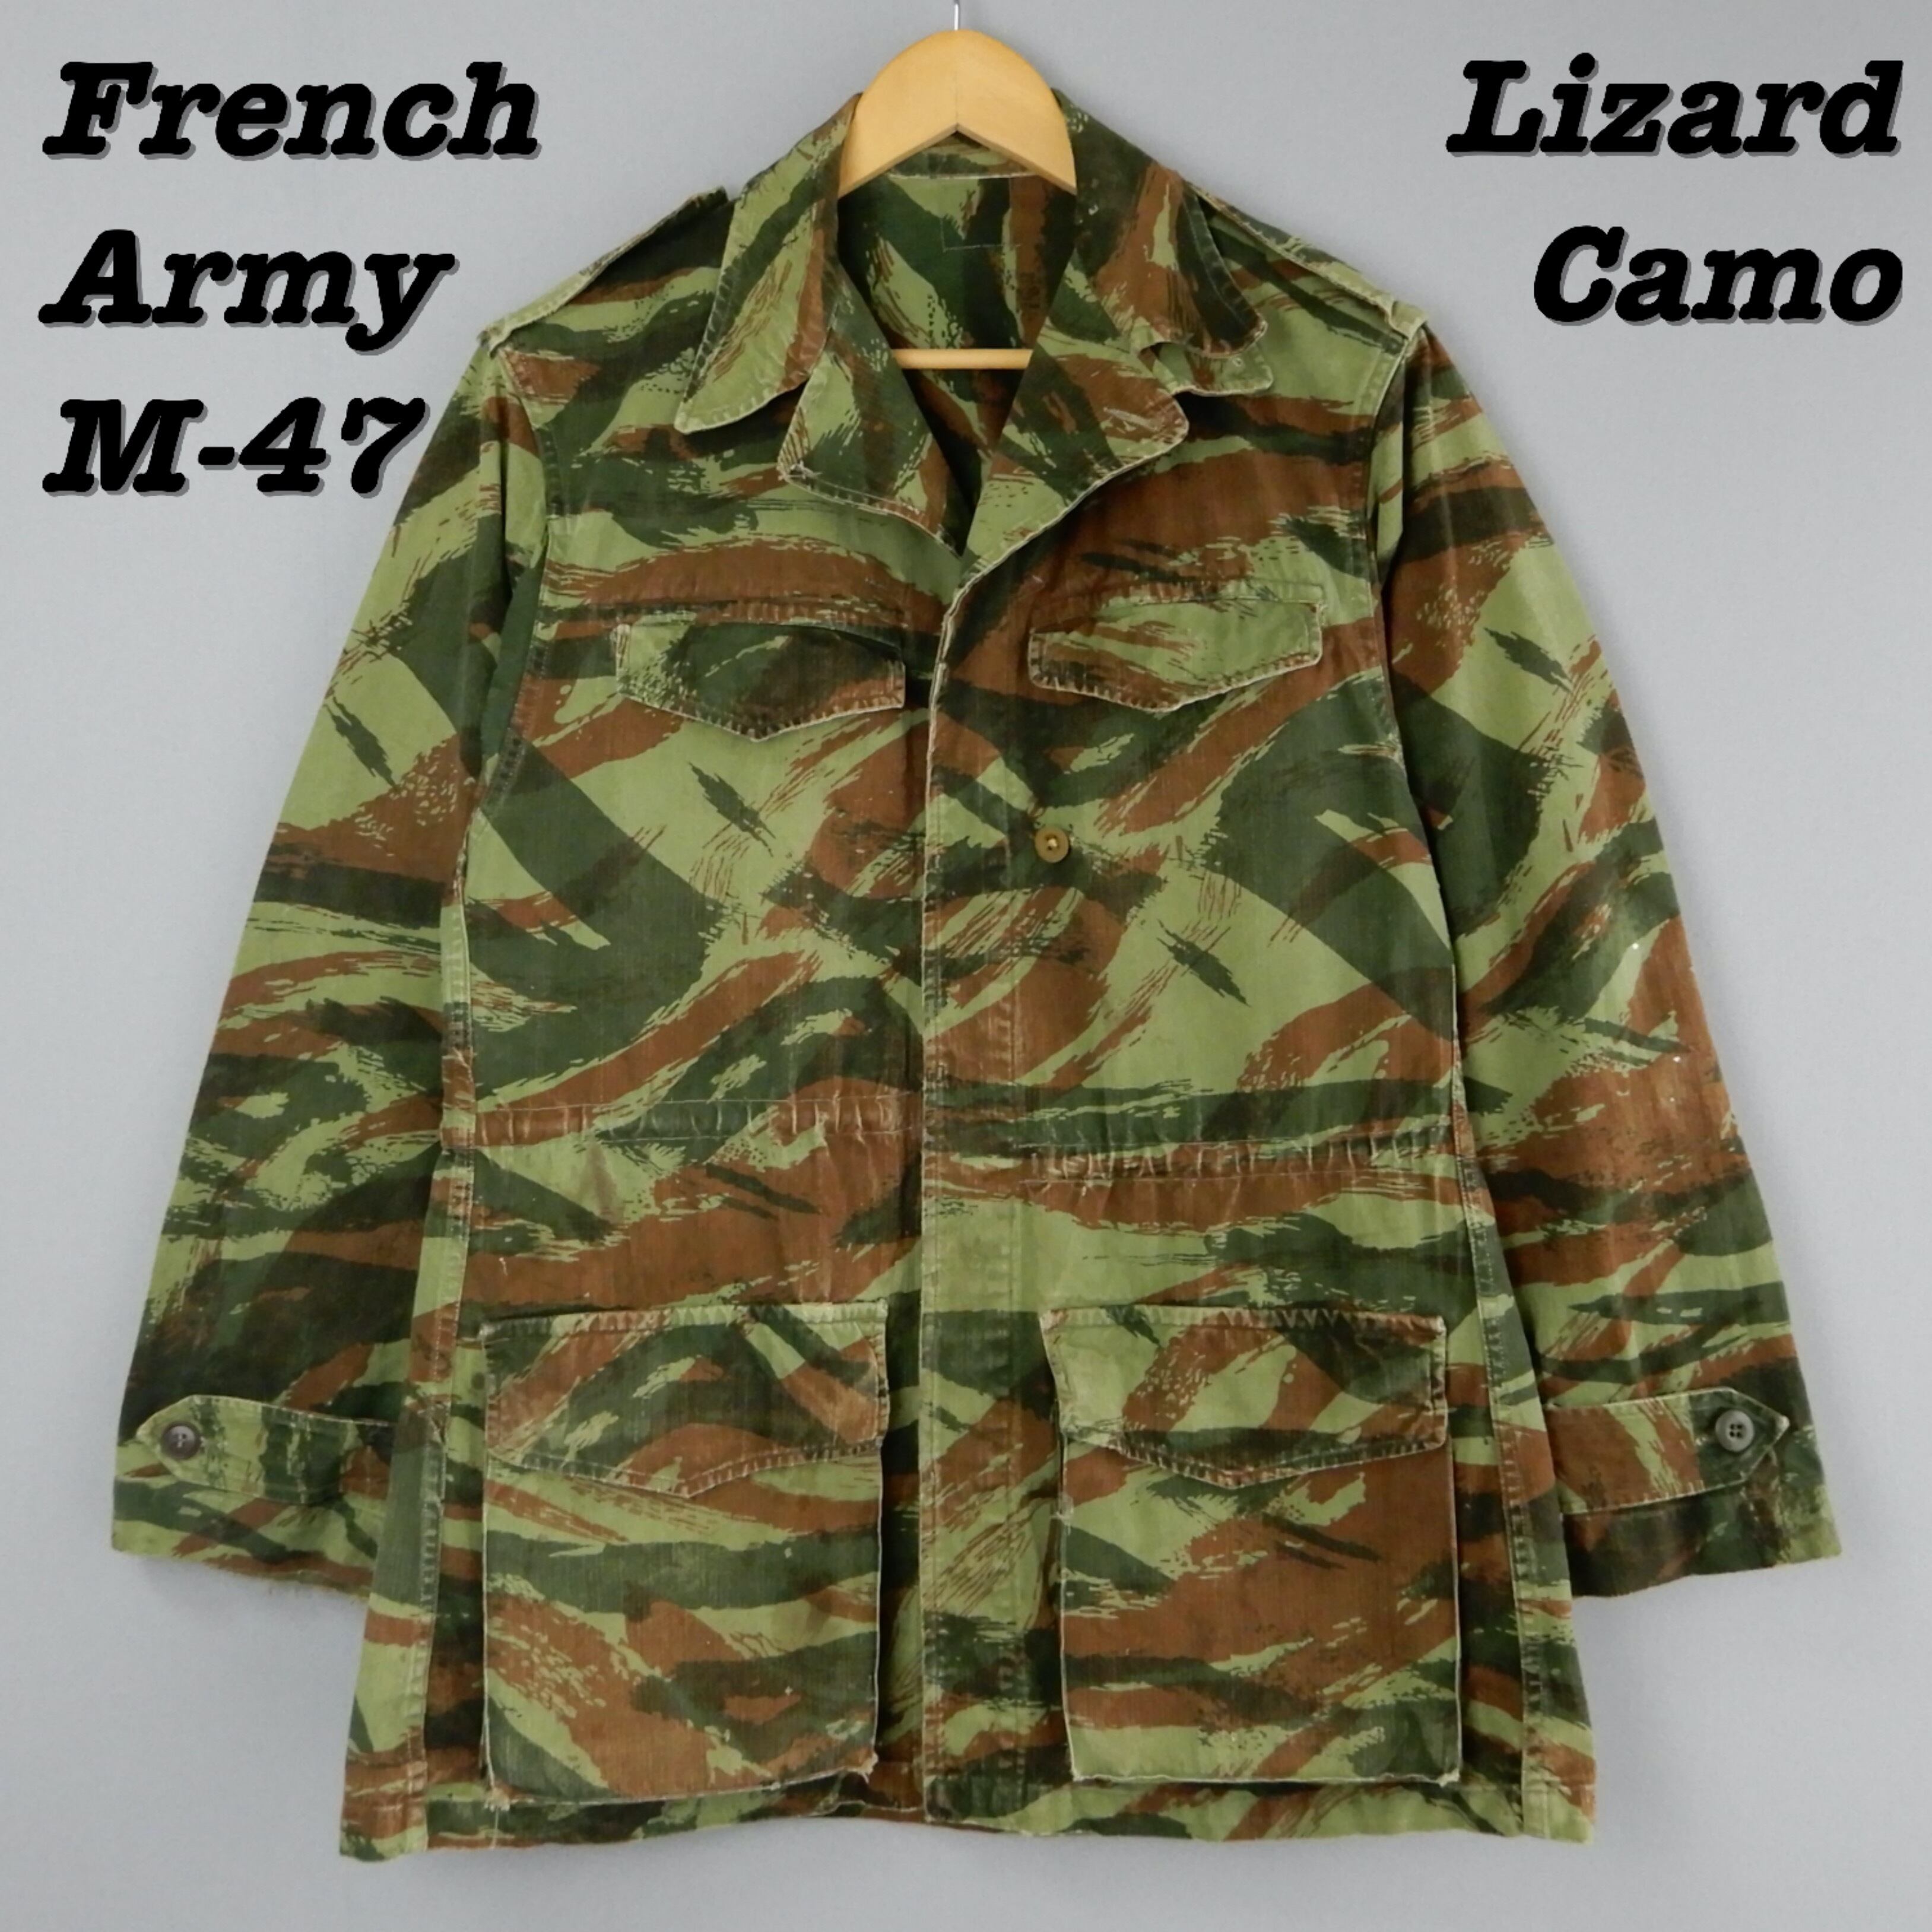 French military　M47 jacket lizard camo